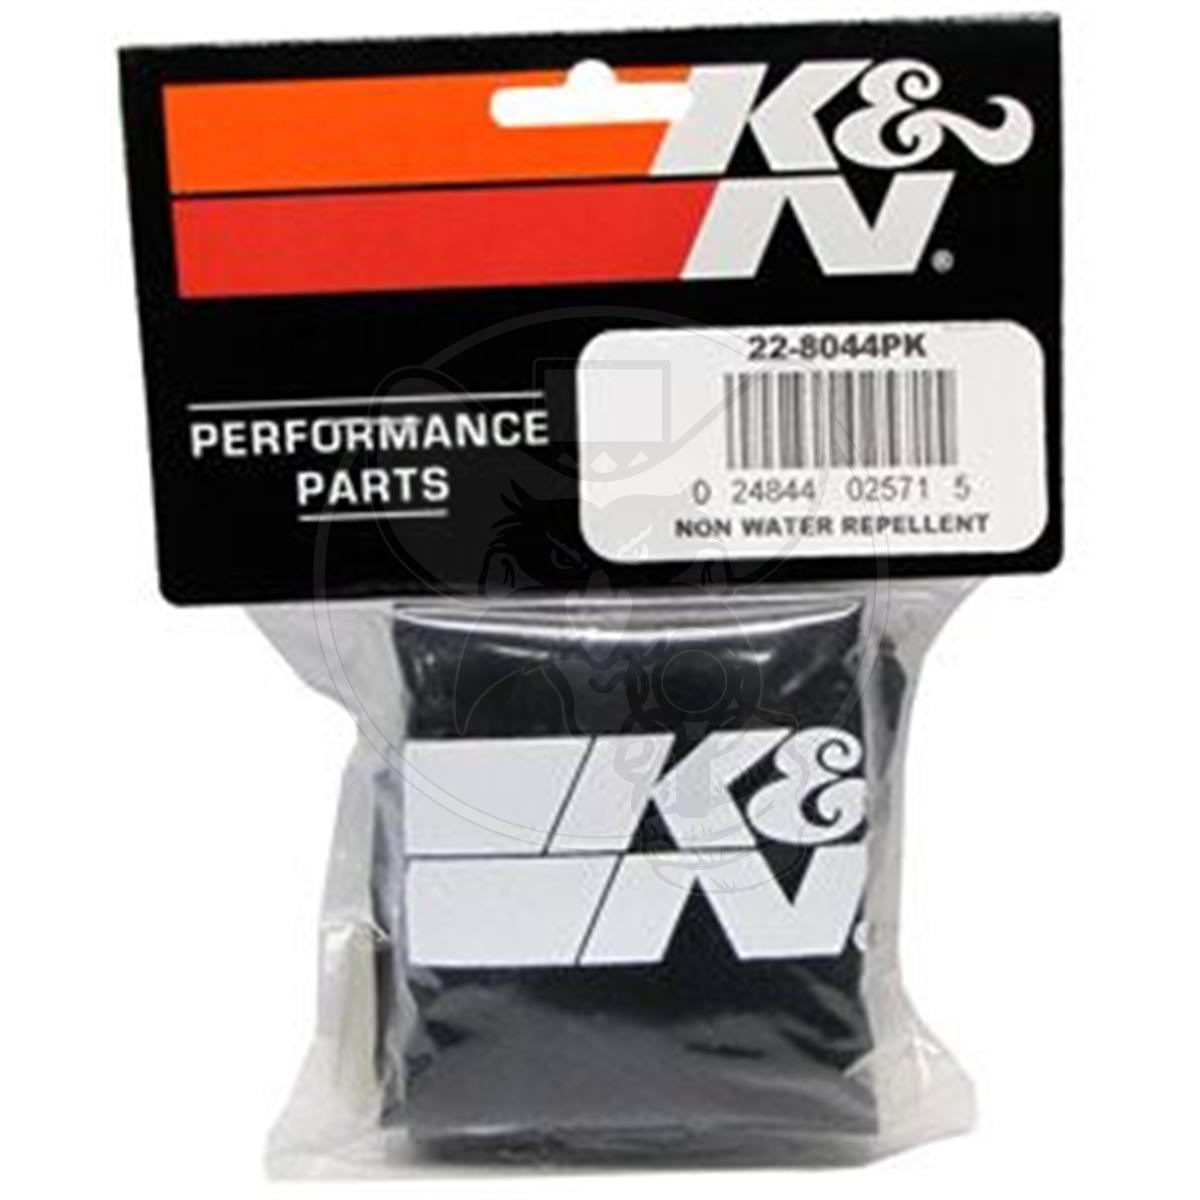 K&N 22-8044PK Black Precharger Filter Wrap For Your K&N RU-2820 Filter 